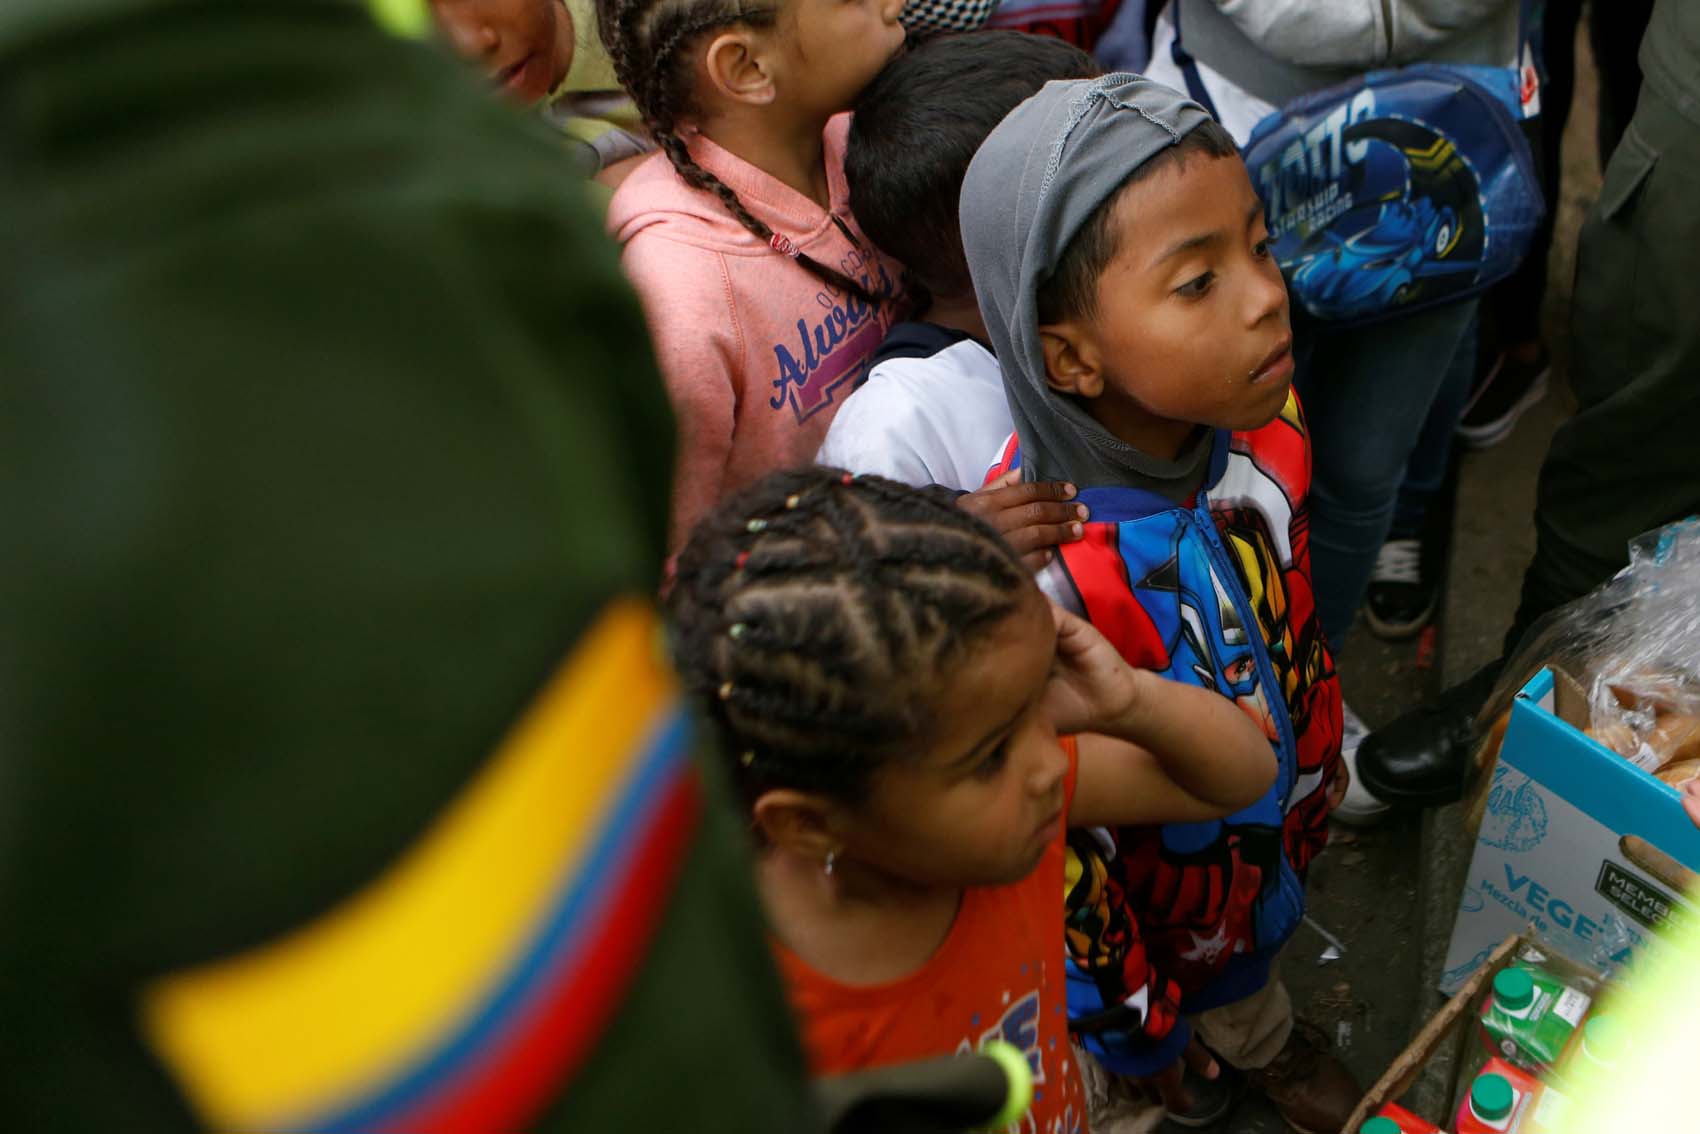 Instituto colombiano de bienestar familiar ha atendido a 51.188 niños venezolanos este año